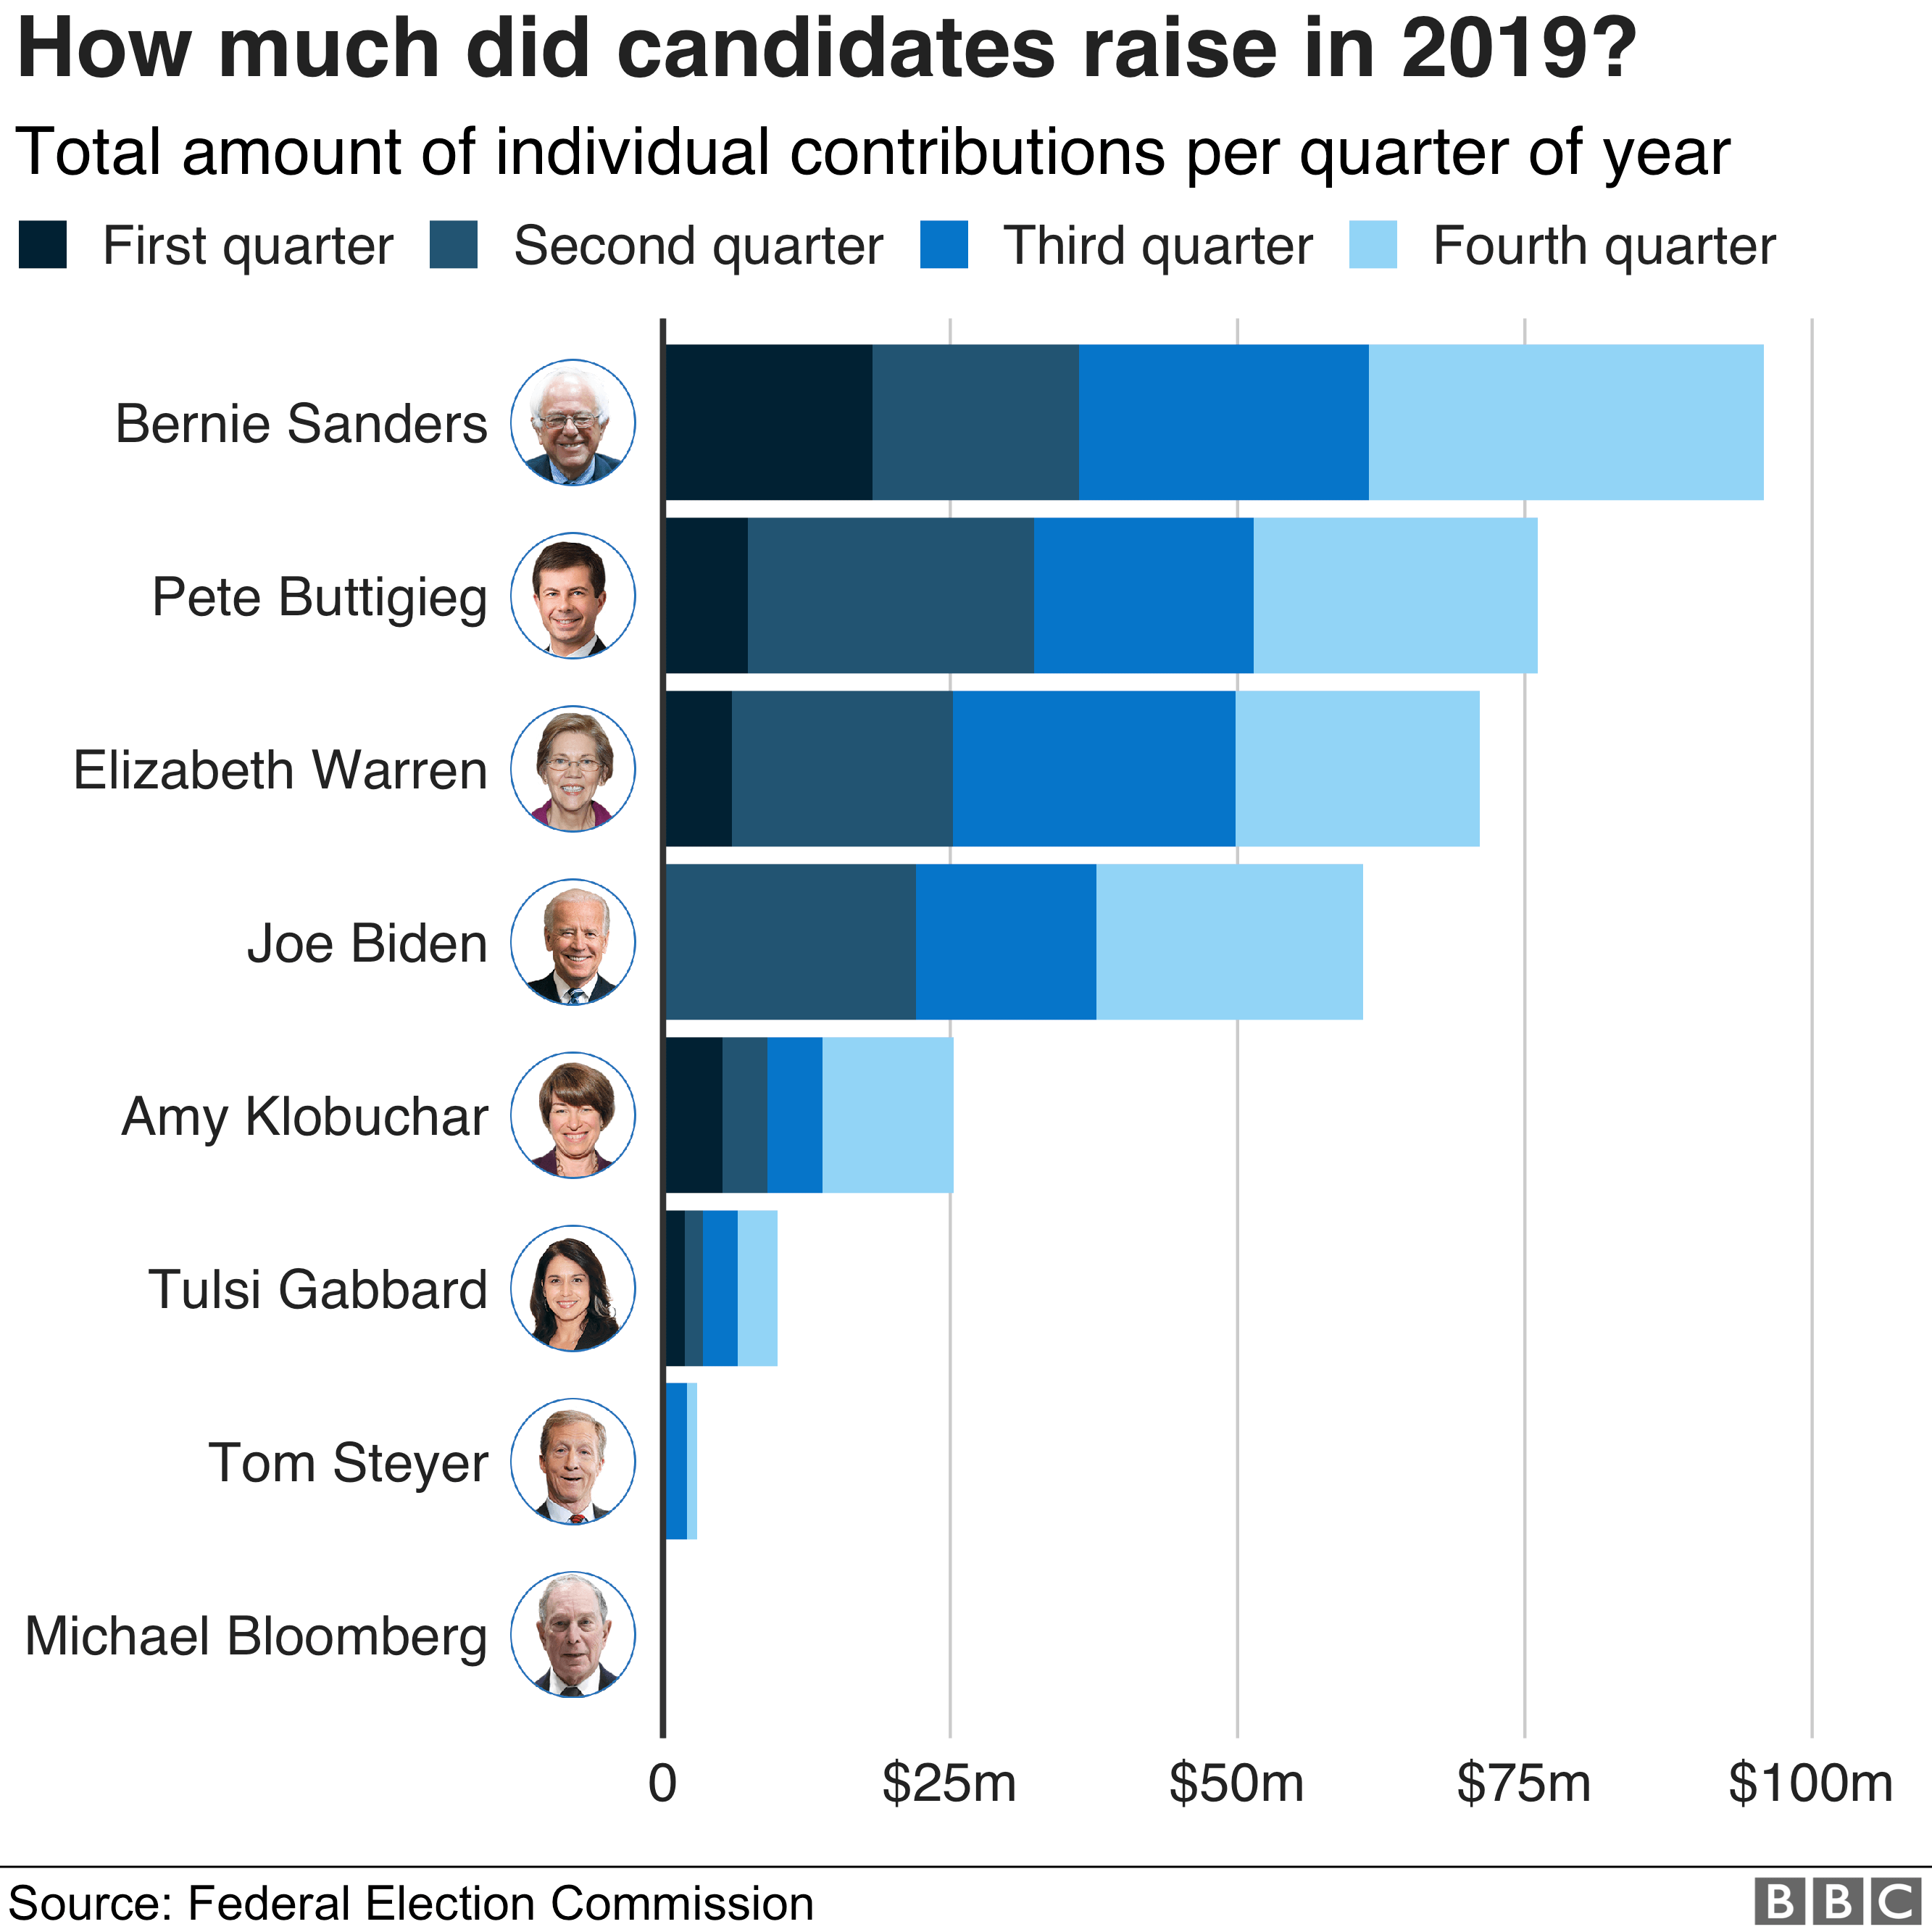 График, показывающий, сколько кандидатов собрали в 2019 году - Берни Сандерс лидировал с суммой чуть менее 100 млн долларов